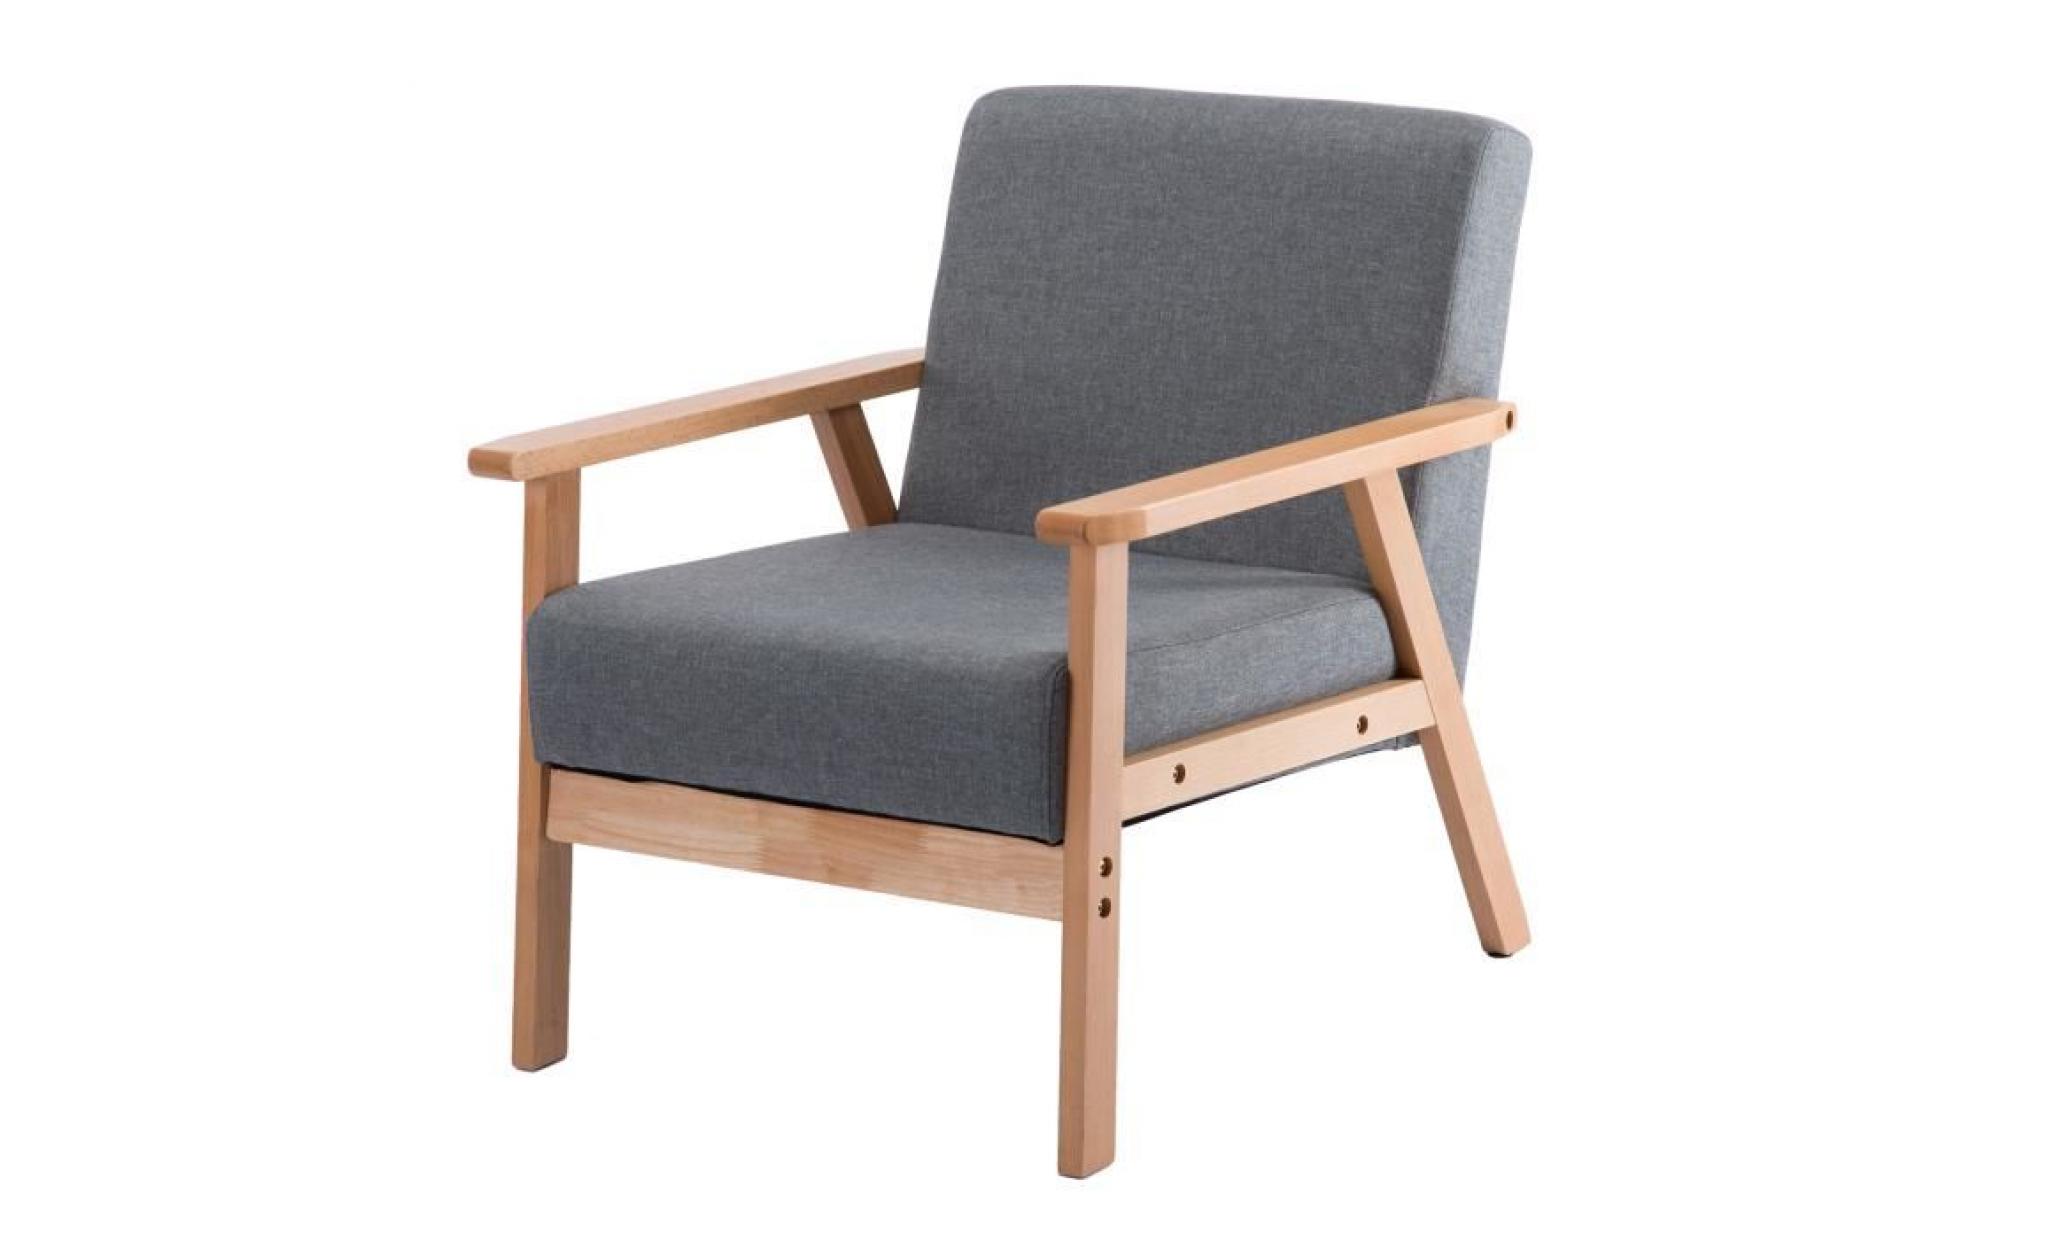 jkk fauteuil de salon chaise longue en tissu coton gris foncé（petit canapé chaise) scandinave